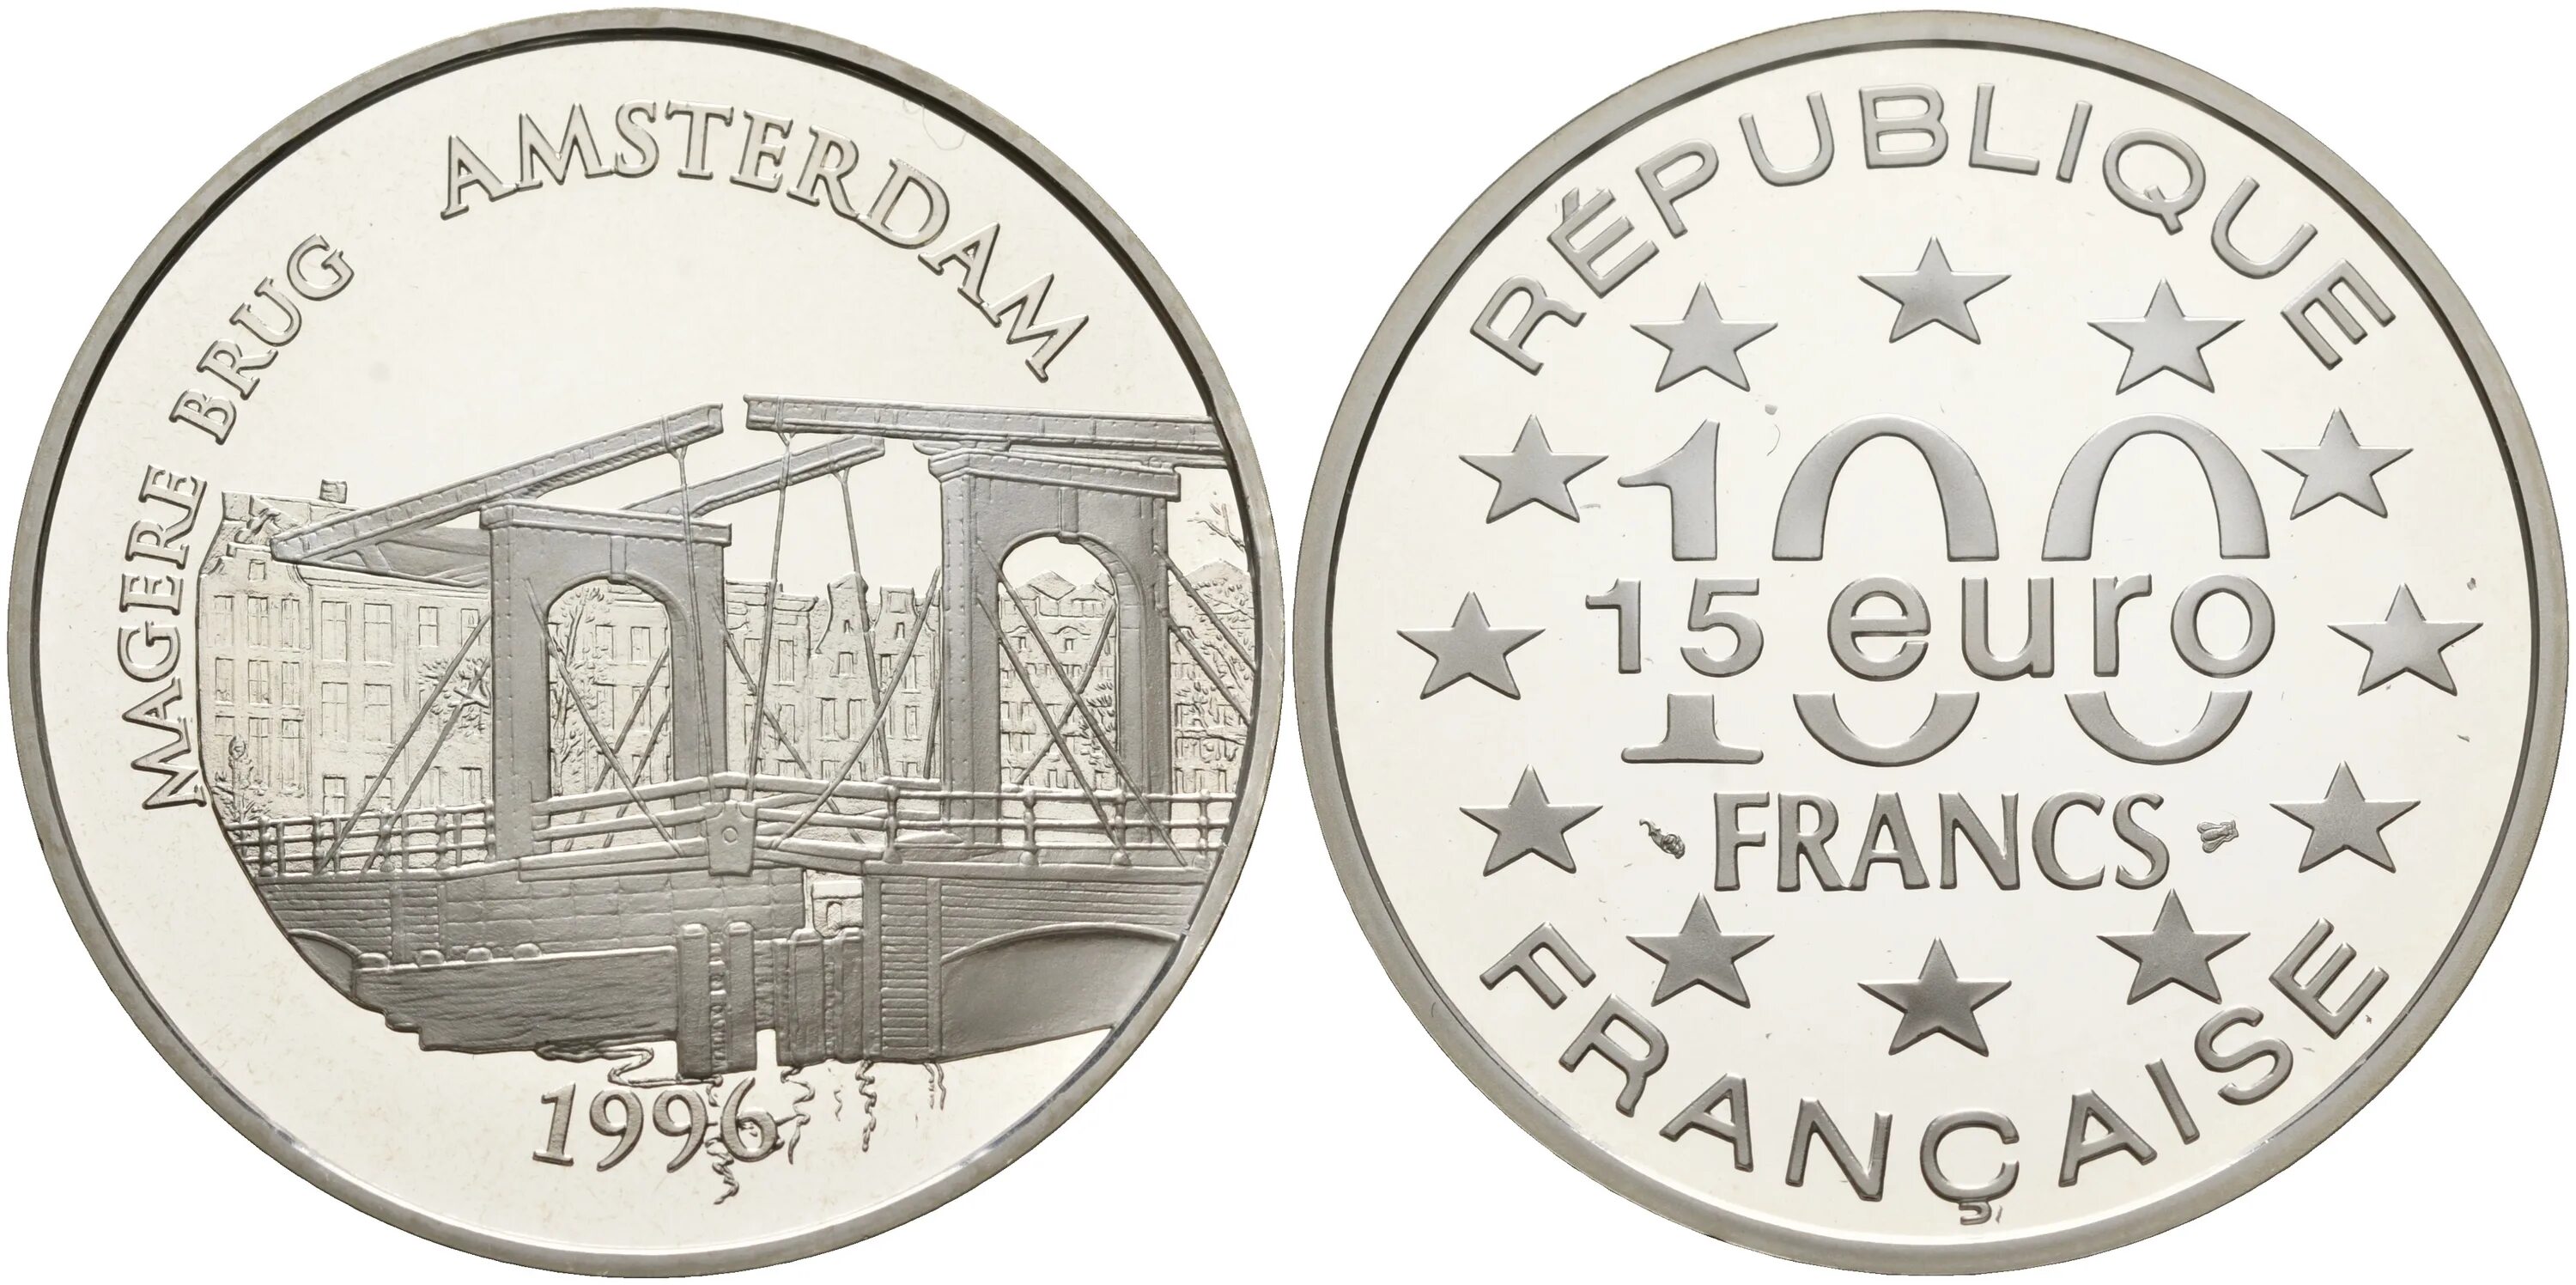 66 евро. Амстердам монета. 100 Франков 1996. 15 Евро. Монеты с мостами.